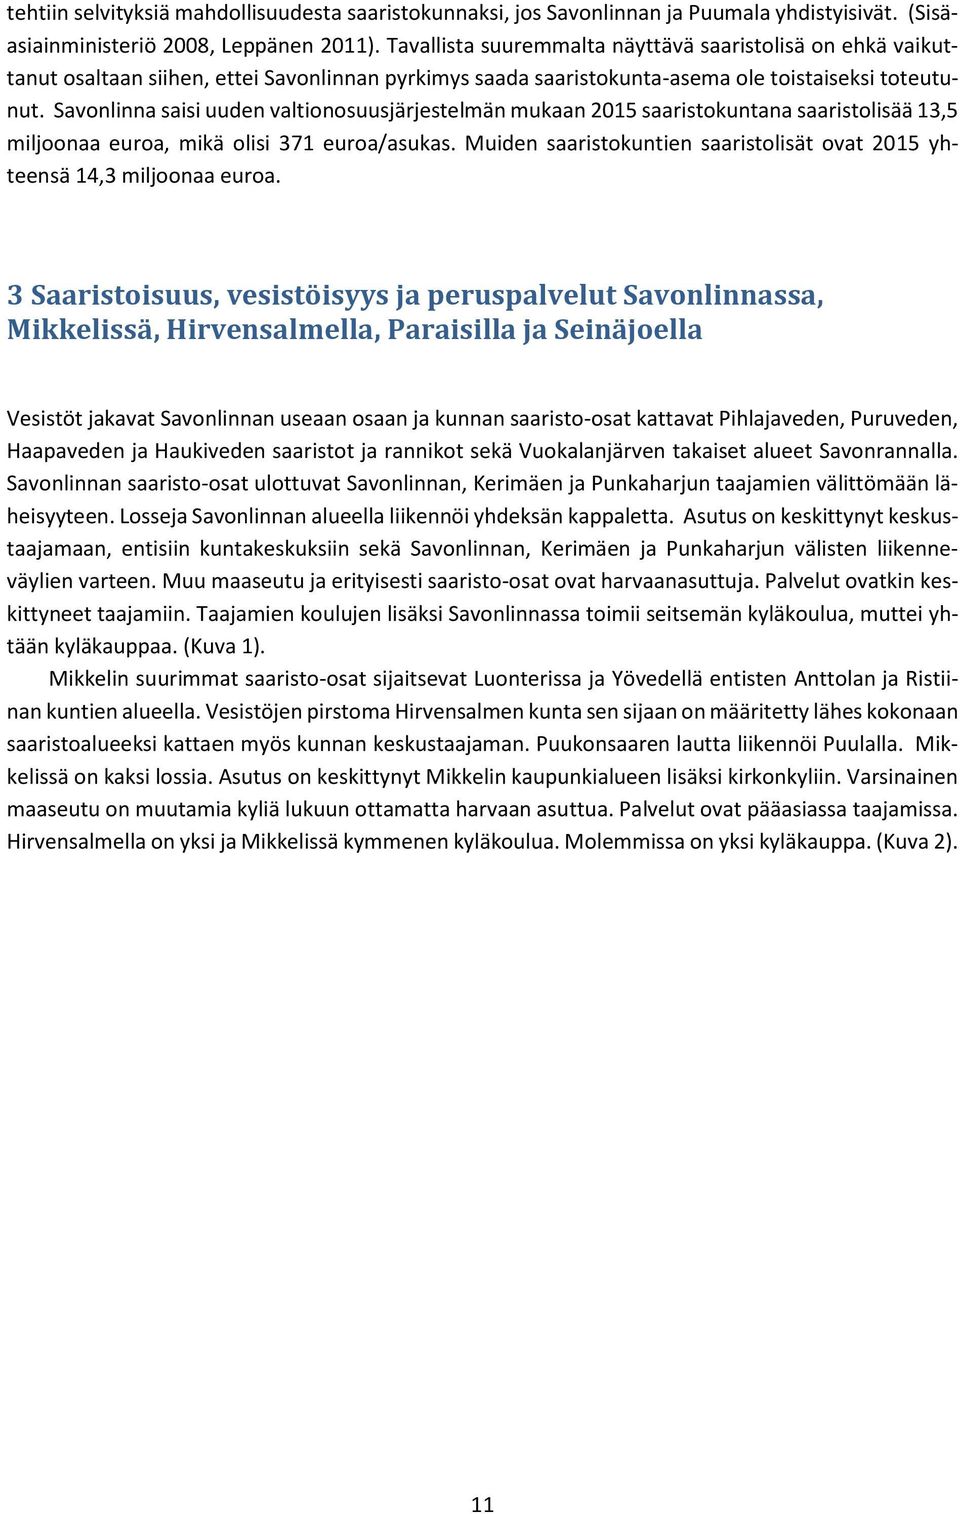 Savonlinna saisi uuden valtionosuusjärjestelmän mukaan 2015 saaristokuntana saaristolisää 13,5 miljoonaa euroa, mikä olisi 371 euroa/asukas.